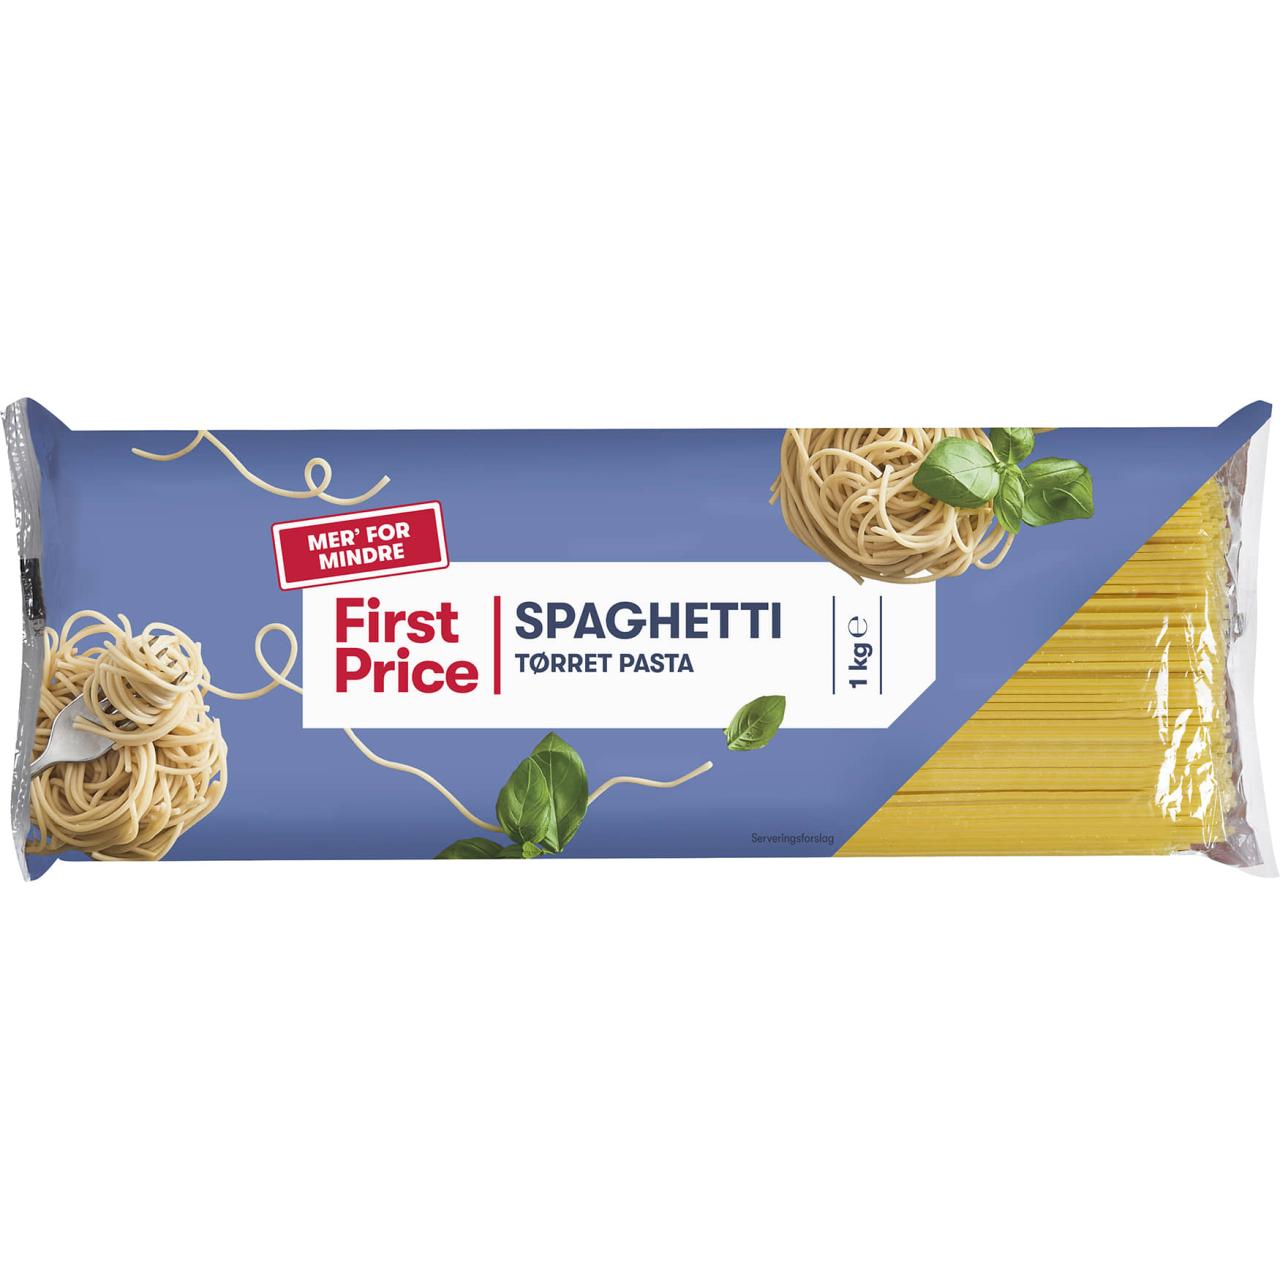 First Price Spaghetti 1kg